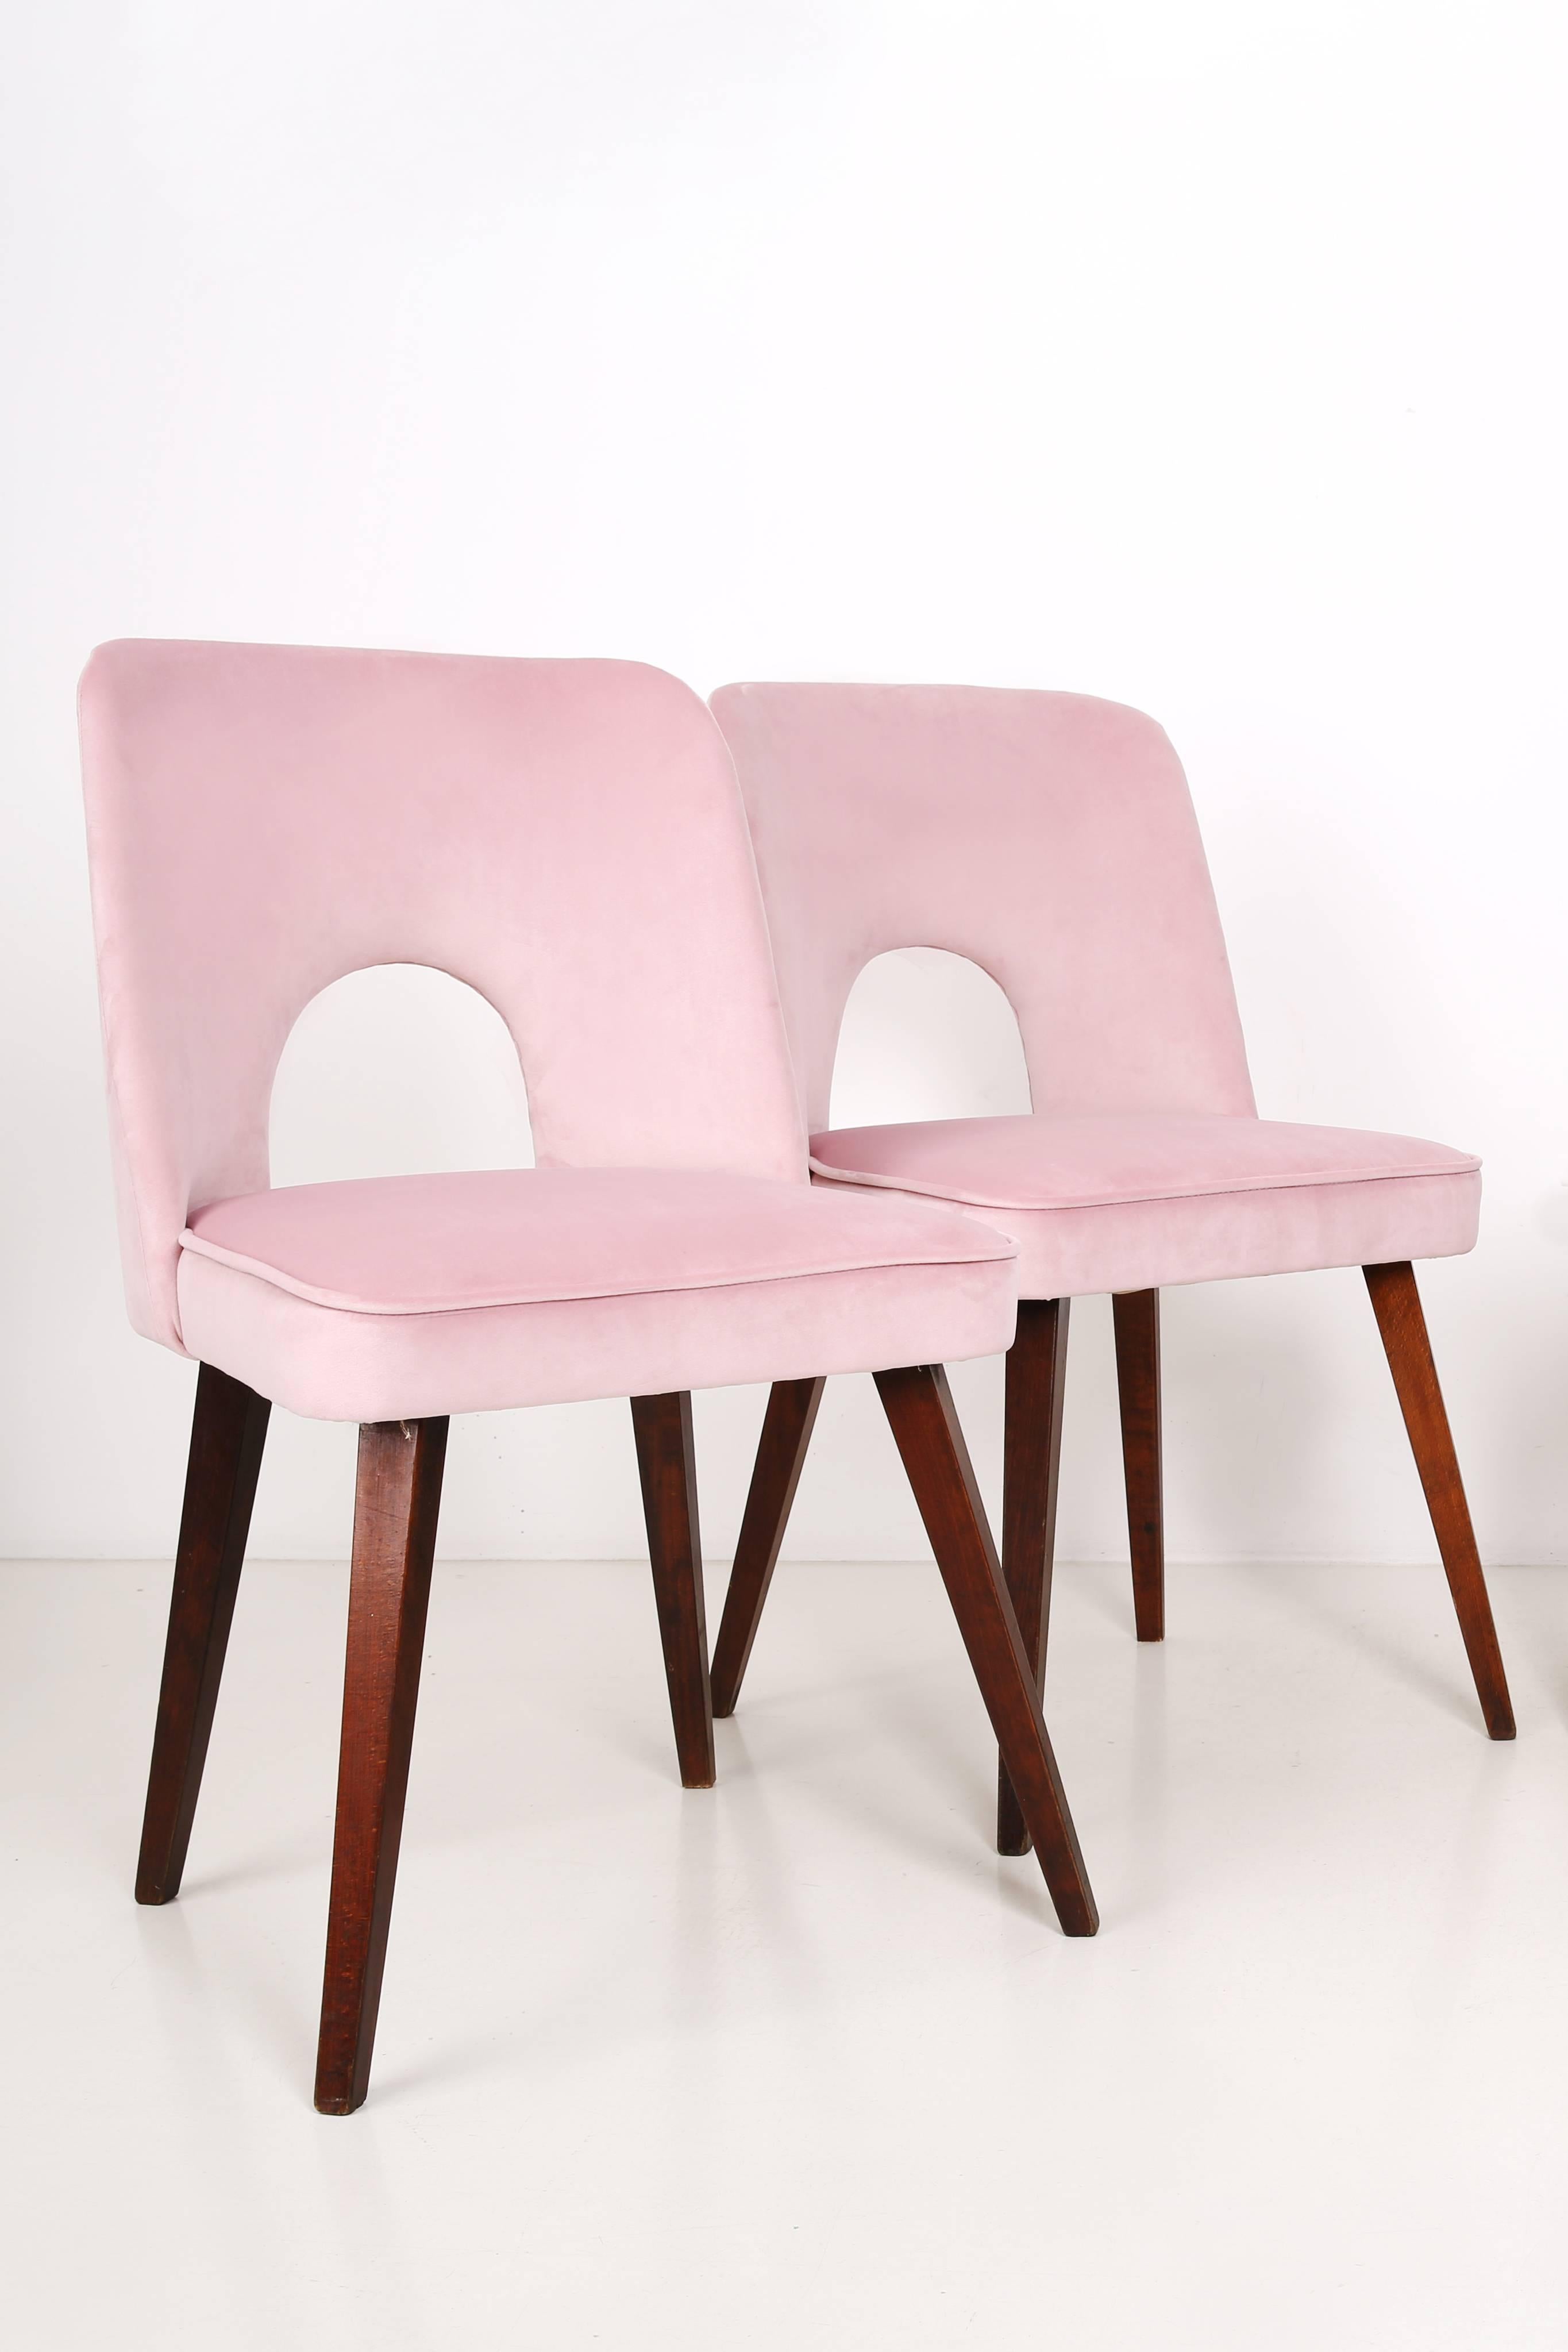 Ensemble de six chaises rose pâle « Shell », années 1960 Excellent état - En vente à 05-080 Hornowek, PL